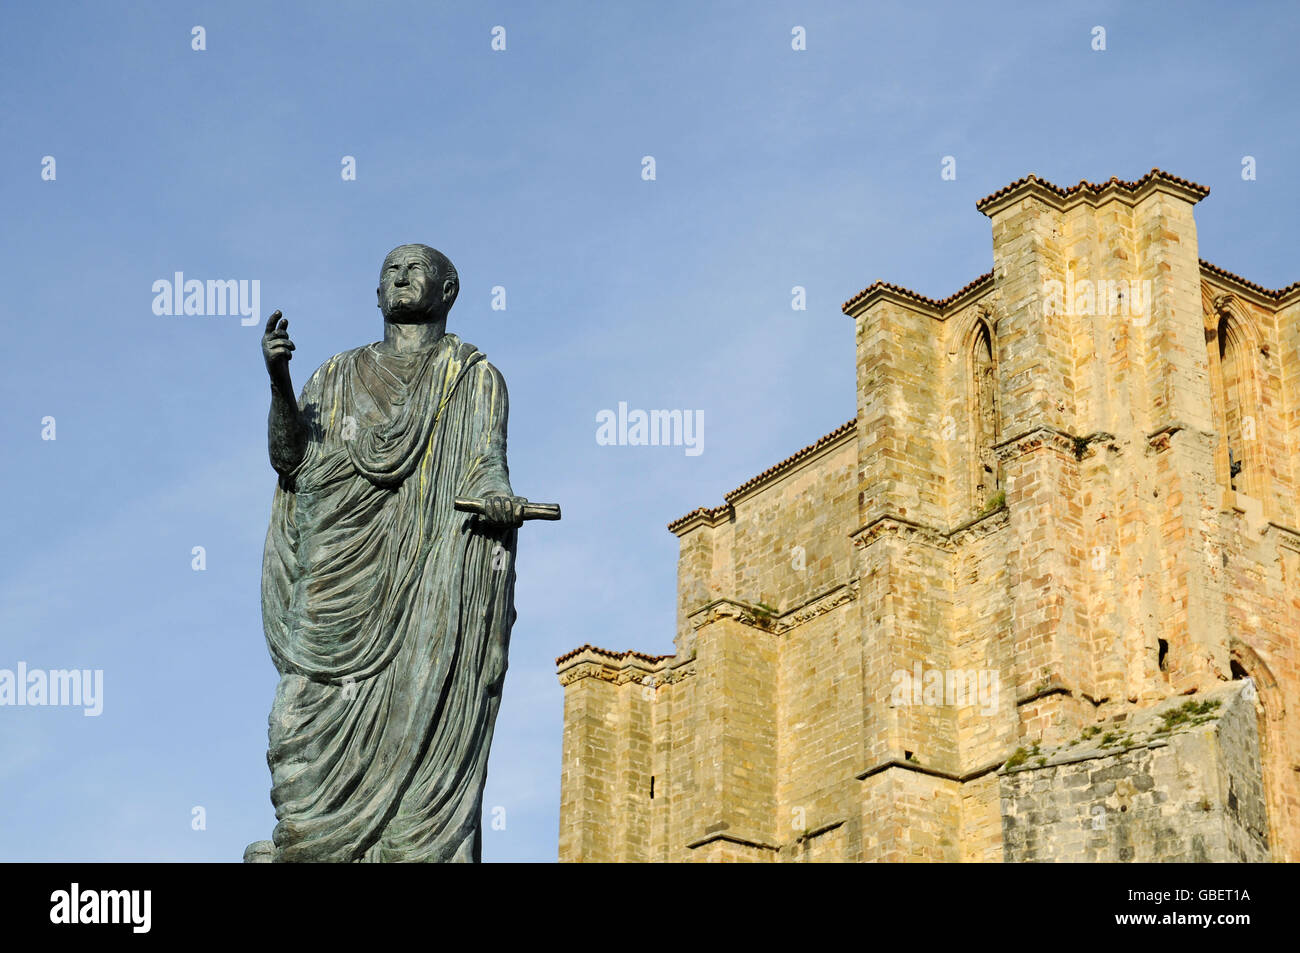 Estatua de César Augusto, iglesia de Santa Maria, Castro Urdiales, el Golfo de Vizcaya, Cantabria, ESPAÑA Foto de stock